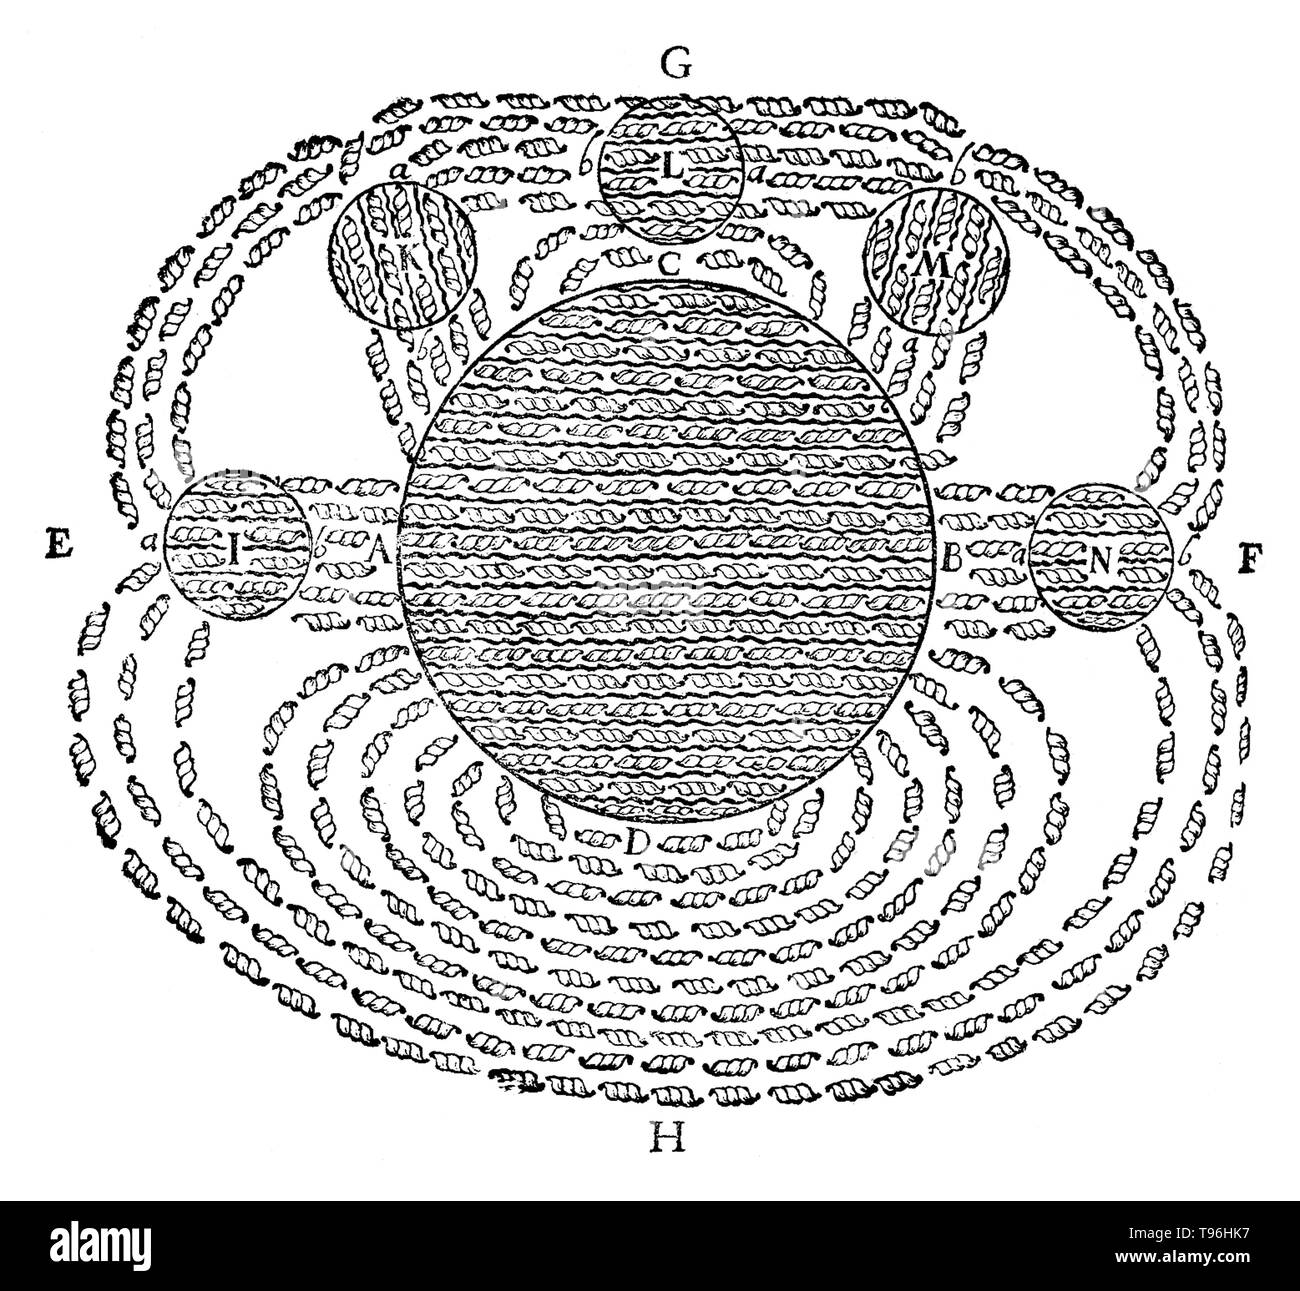 Champ magnétique par René Descartes, à partir de ses Principia Philosophiae, 1644. C'est l'un des premiers dessins du concept d'un champ magnétique. Il montre le champ magnétique de la terre (D) attirer plusieurs tables rondes (lodestones J, K, L, M, N) et illustre sa théorie du magnétisme. Banque D'Images